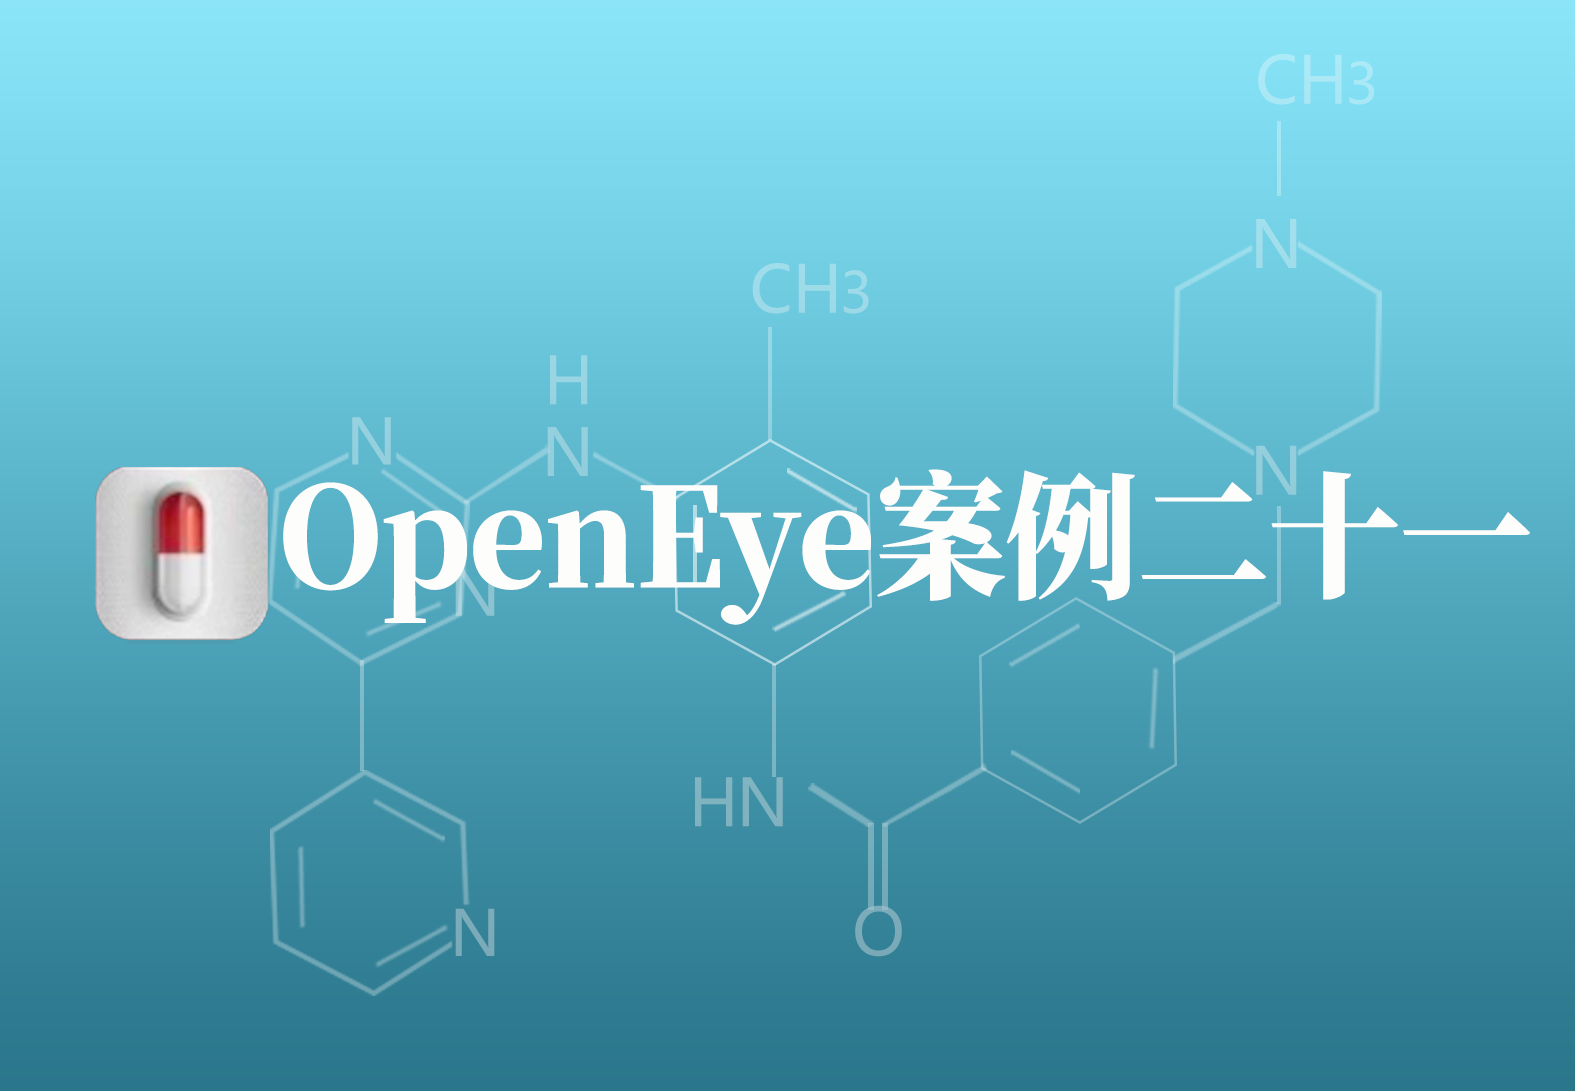 OpenEye应用案例二十一：基于配体和受体虚拟筛选方法研究化合物靶标